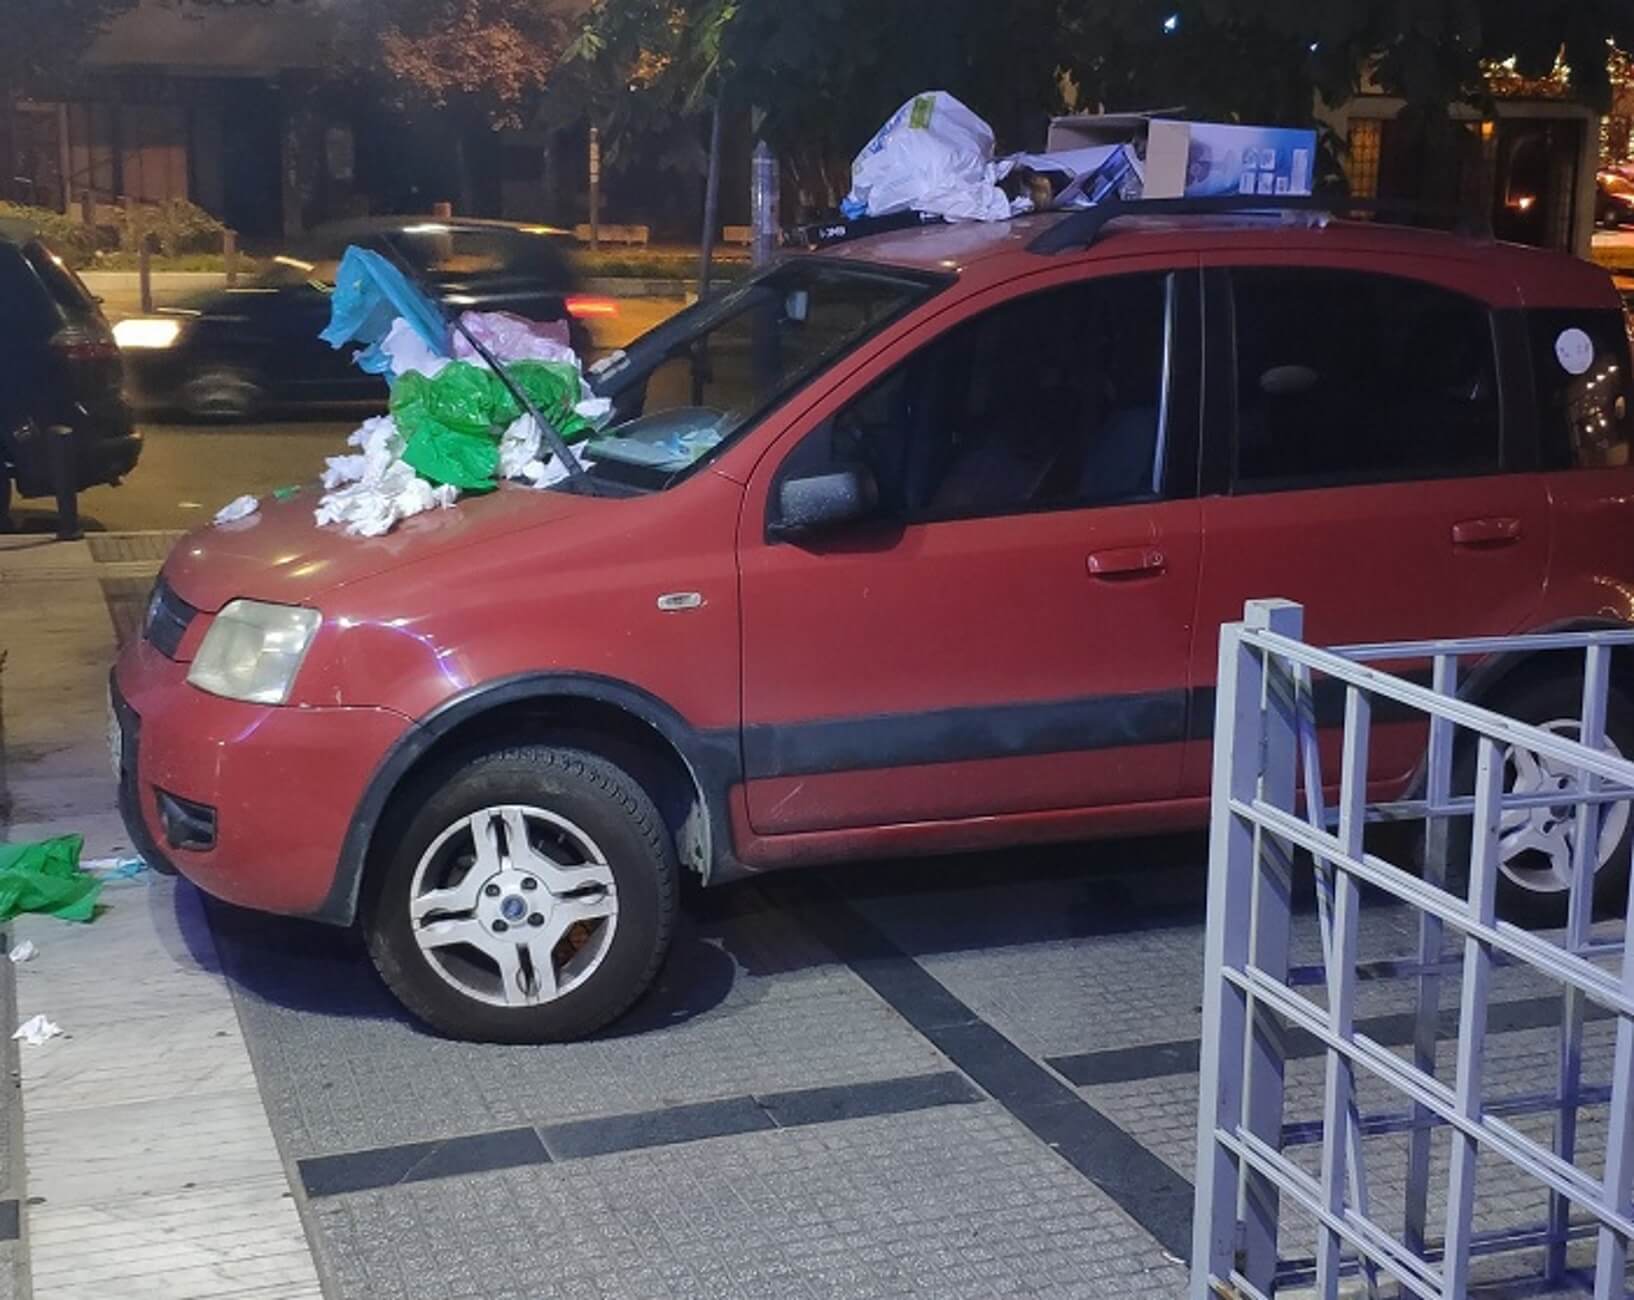 Θεσσαλονίκη: Πάρκαρε σε πεζοδρόμιο και όταν επέστρεψε στο αυτοκίνητο είδε αυτές τις εικόνες [pics]